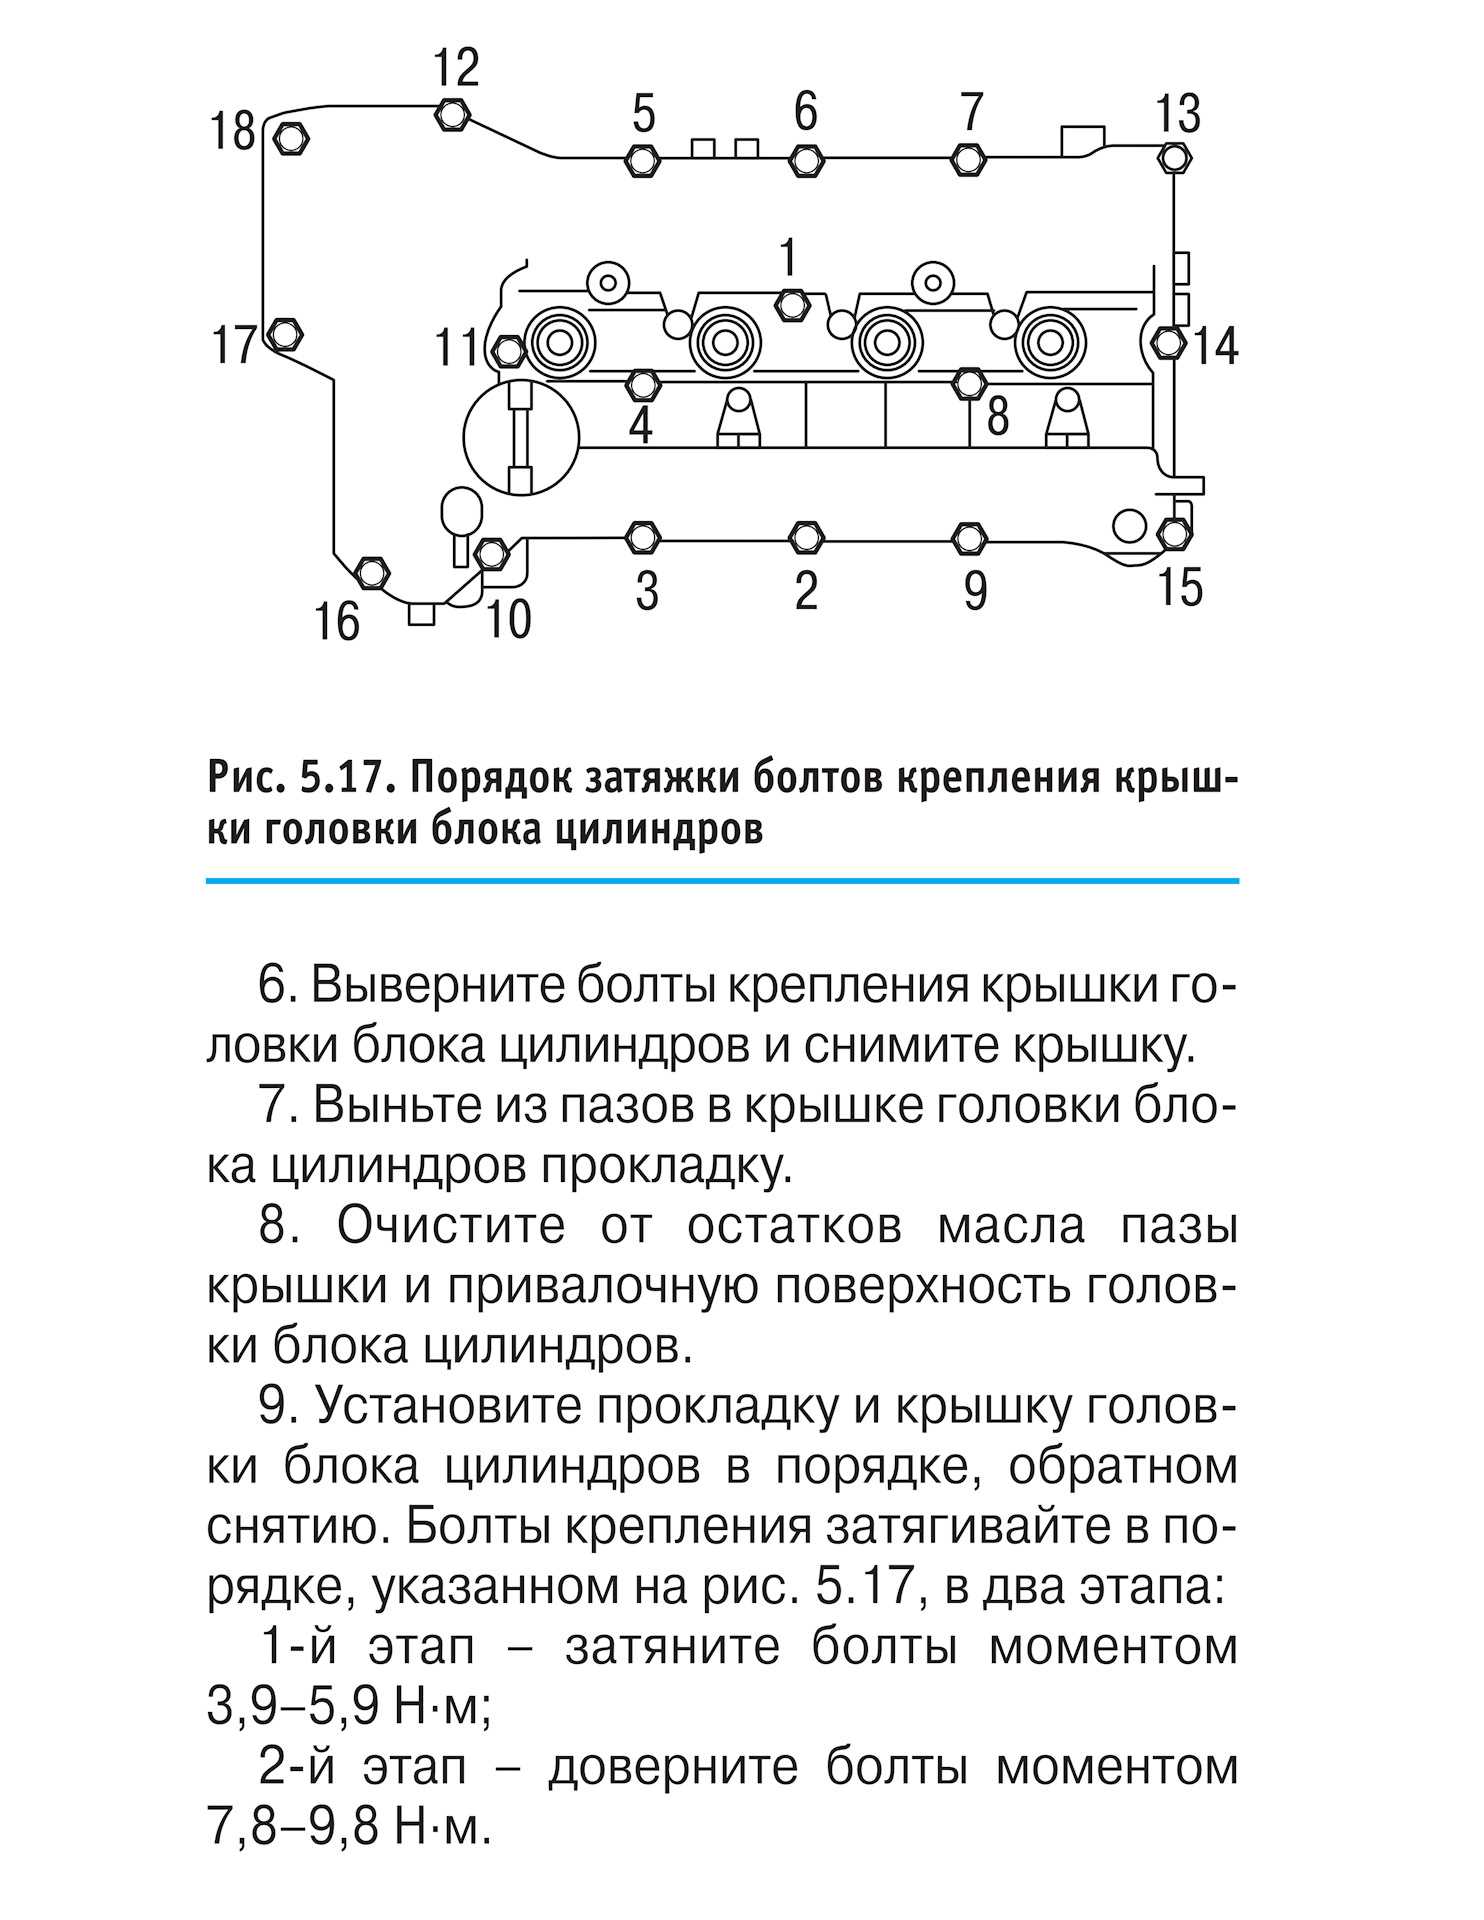 Разработка технологического процесса восстановления блока цилиндров зил-130 (стр. 1 из 7)